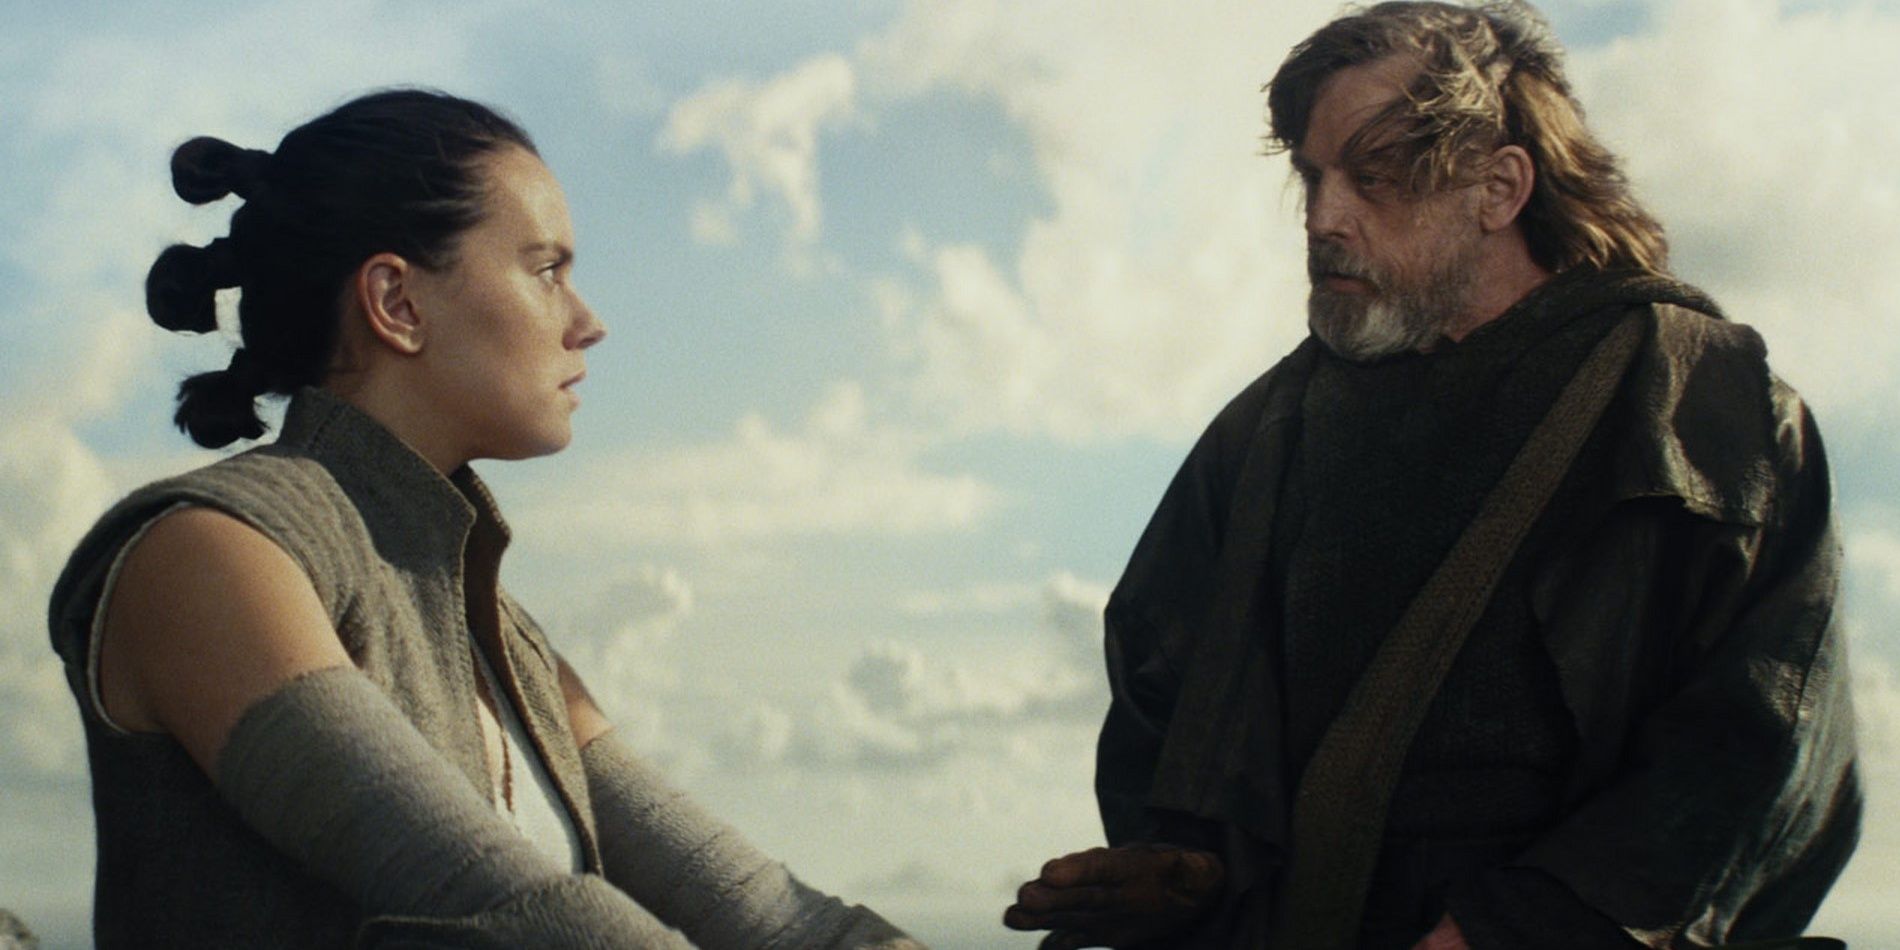 Rey memperhatikan Luke saat dia mengajarinya tentang Ahch-To